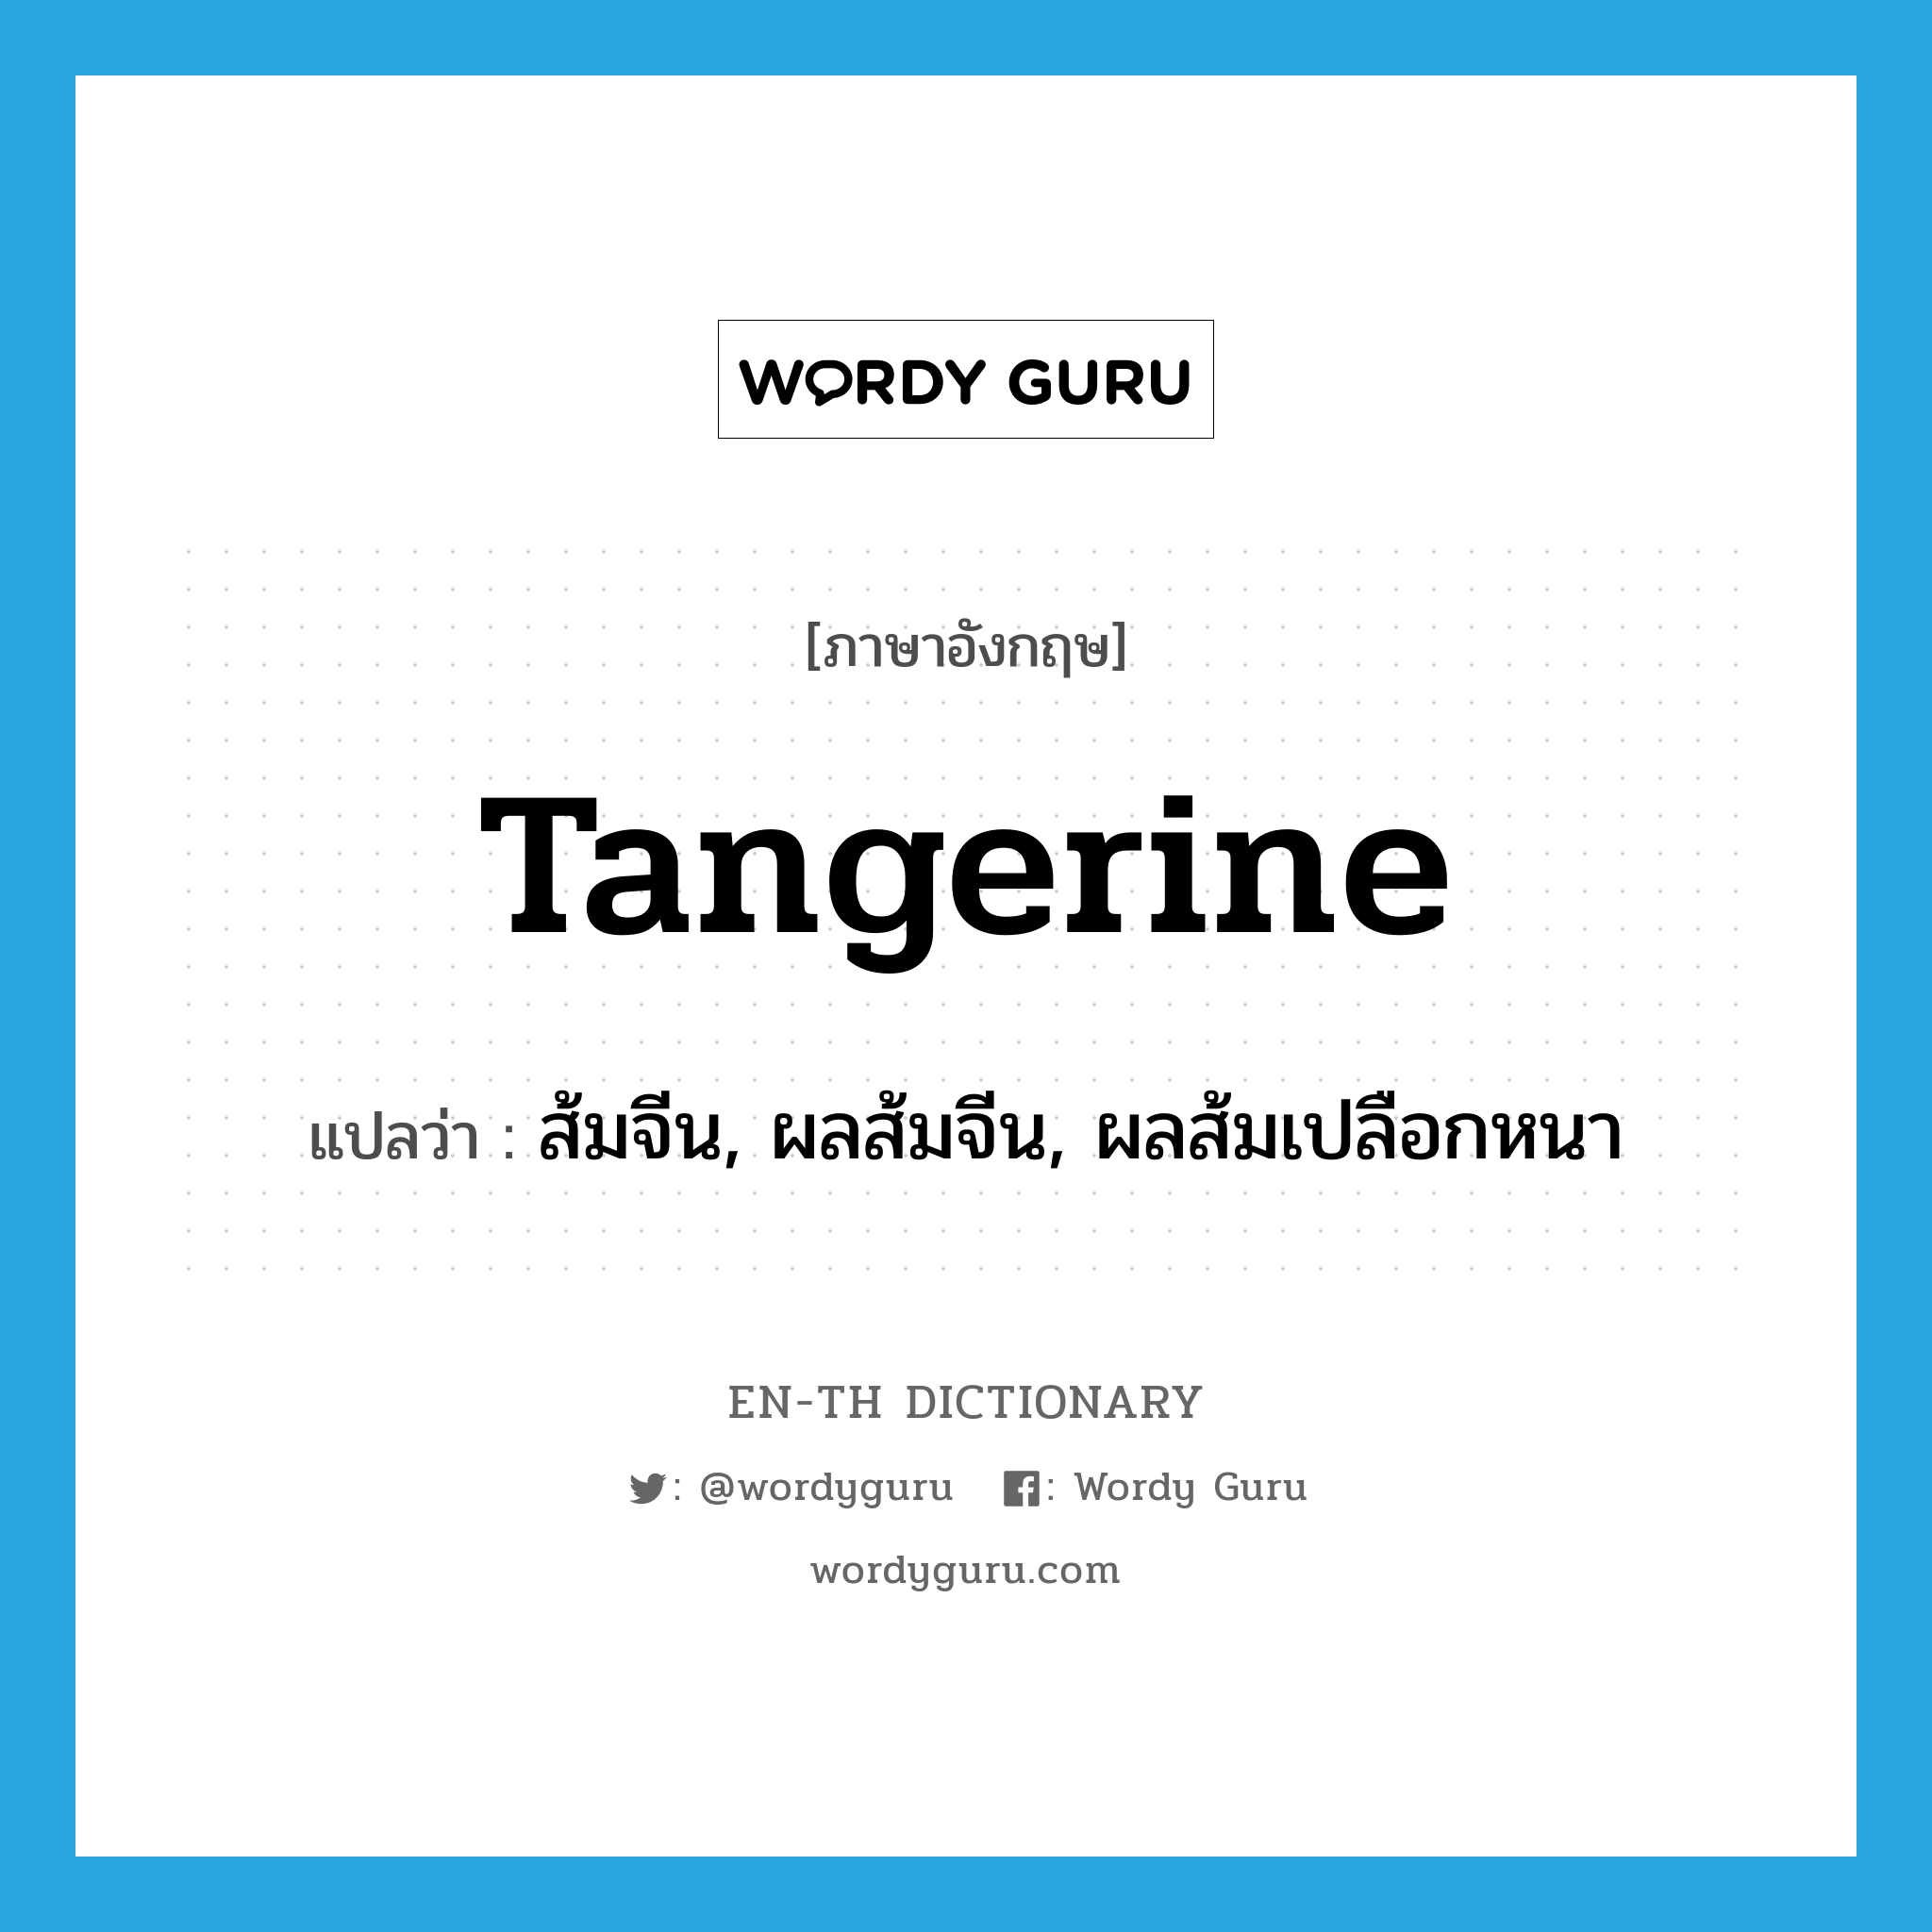 tangerine แปลว่า?, คำศัพท์ภาษาอังกฤษ tangerine แปลว่า ส้มจีน, ผลส้มจีน, ผลส้มเปลือกหนา ประเภท N หมวด N